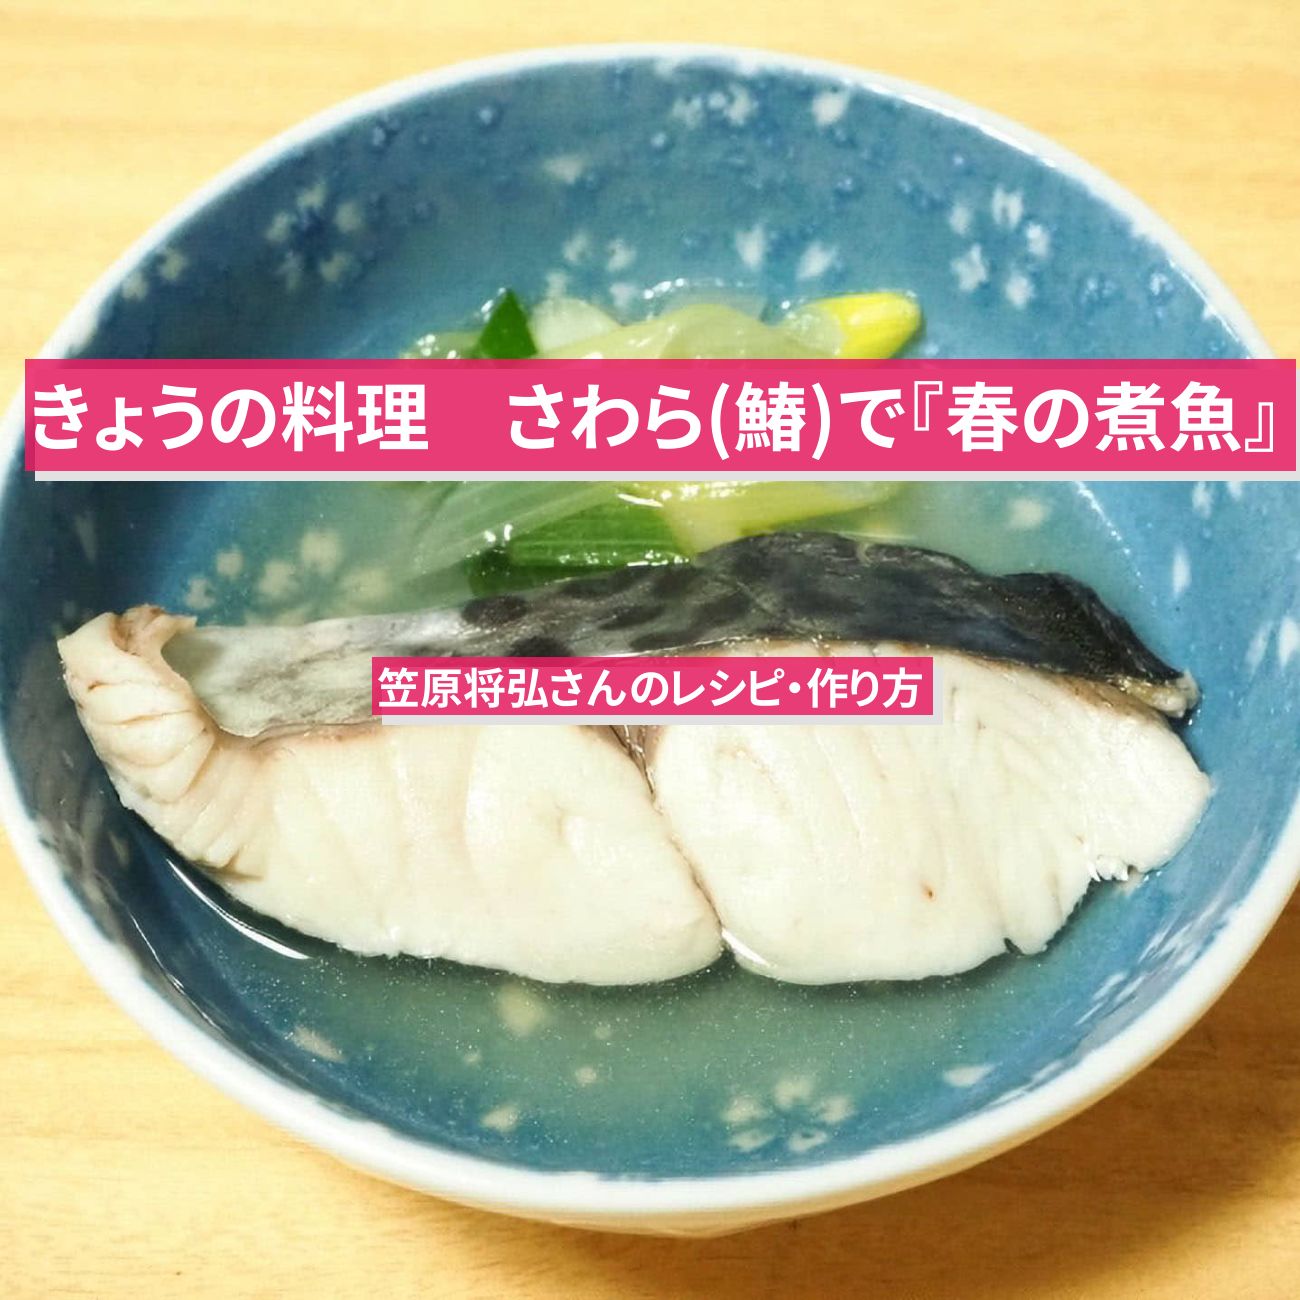 【きょうの料理】さわら(鰆)で『春の煮魚』笠原将弘さんのレシピ・作り方